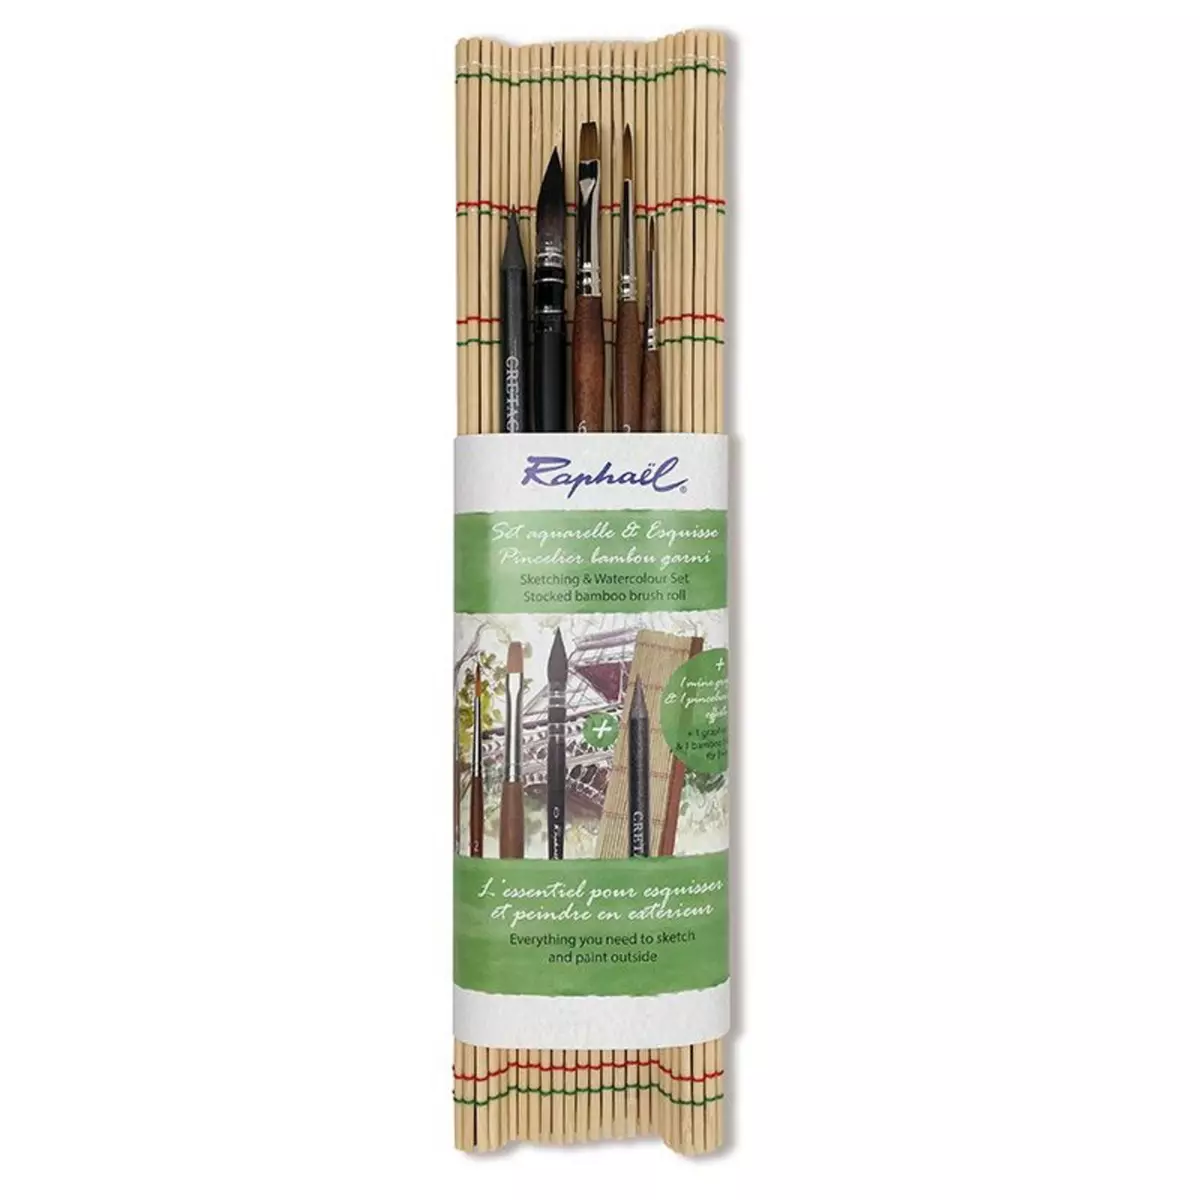  Set de 4 pinceaux en bambou + 1 monolith pour aquarelle